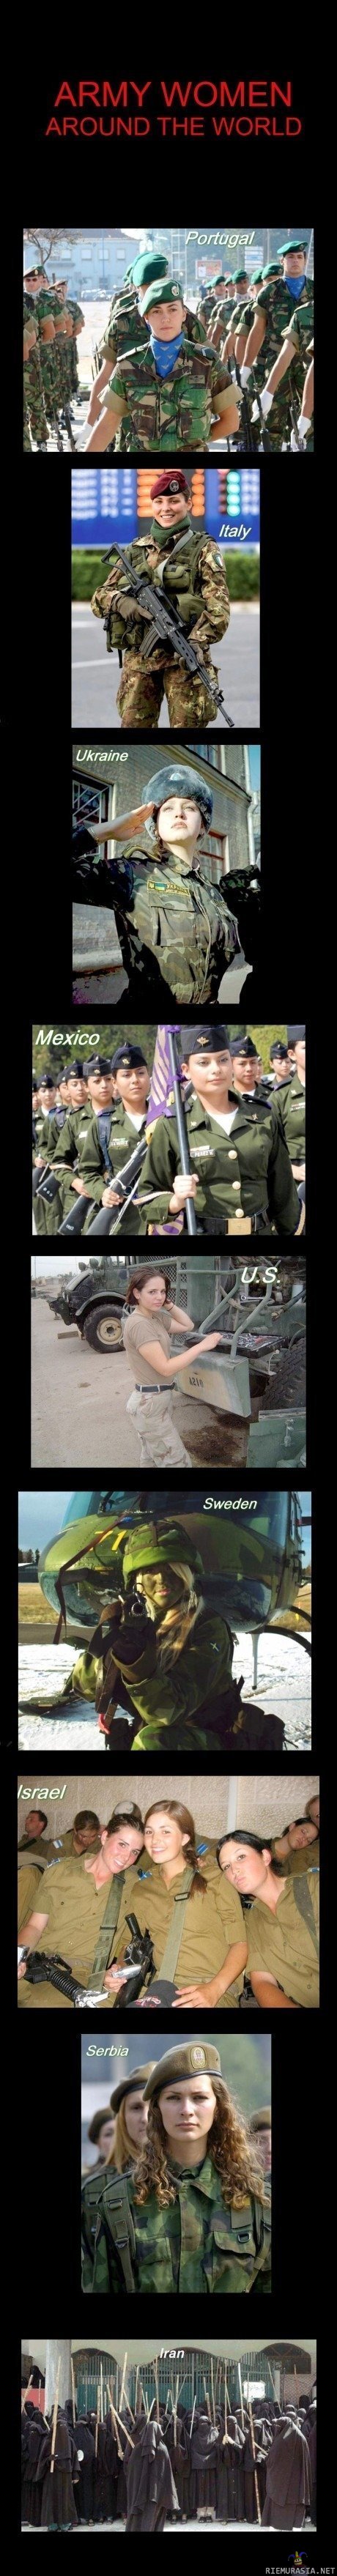 Nais sotilaita ympäri maailman